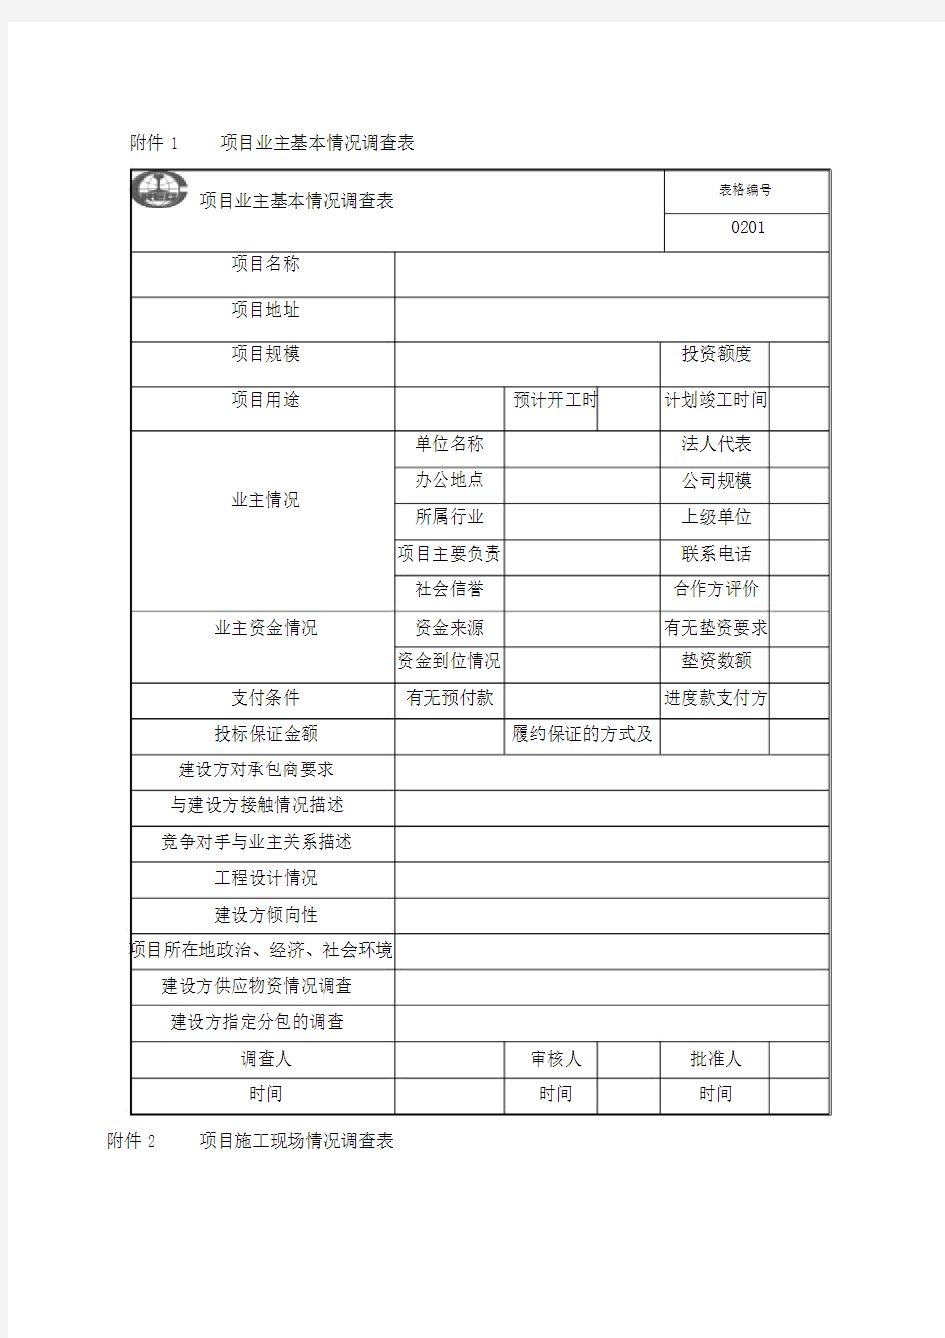 中国中铁股份公司工程项目精细化管理办法表格.doc